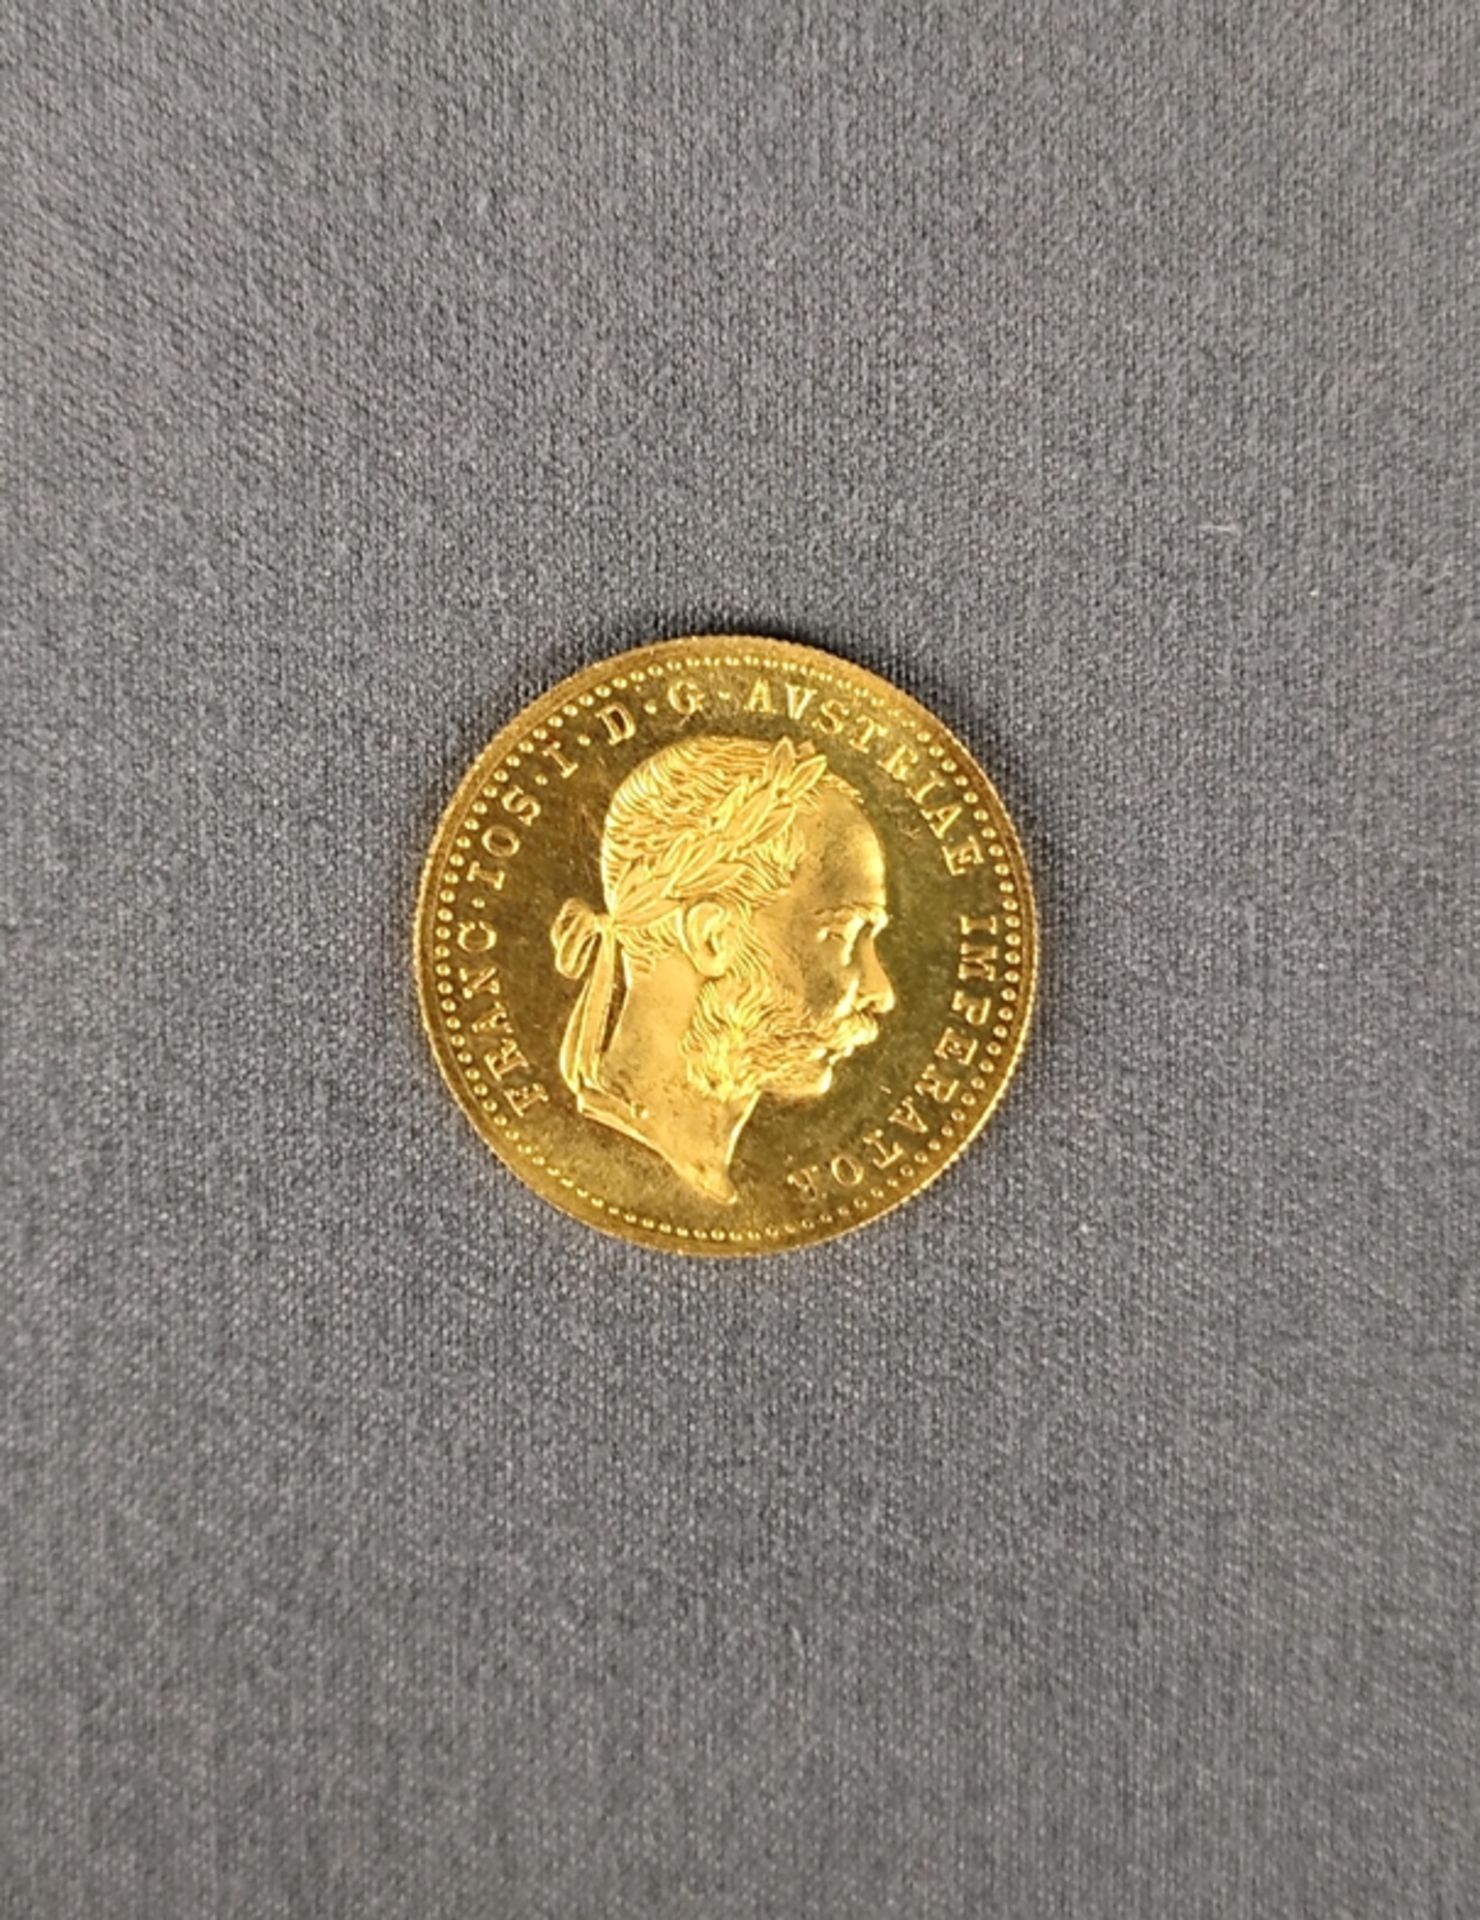 Goldmünze, 1 Dukat, Franz Josef I., Österreich, 1915, 986 Gold, 3,4g, Diameter 20mm